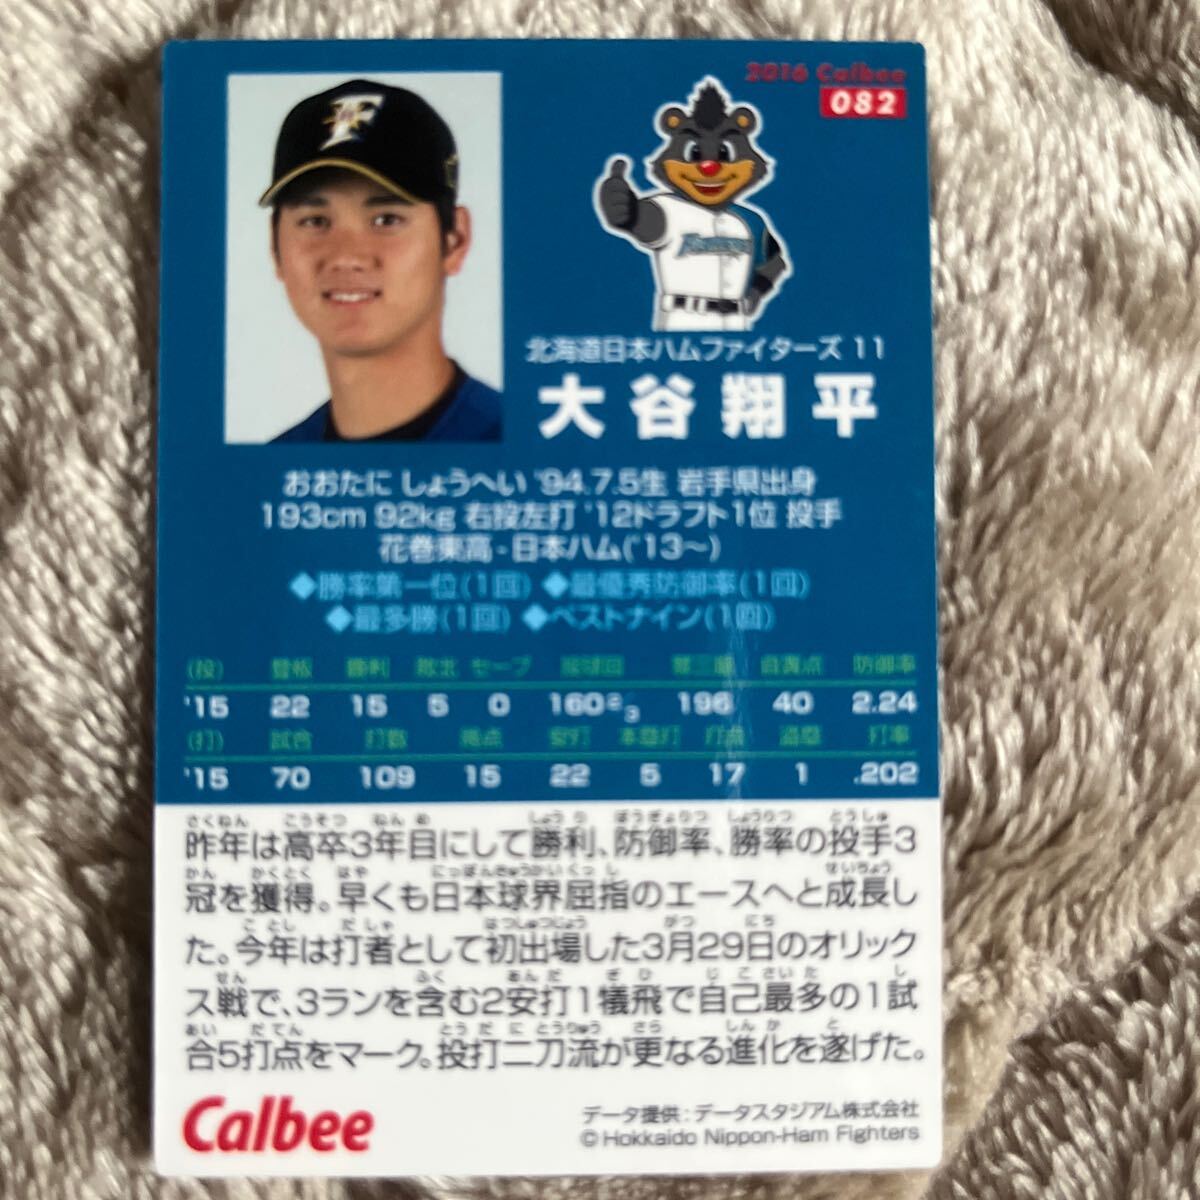 2014-2016 カルビー プロ野球チップス 大谷翔平 カード4枚セット_画像9